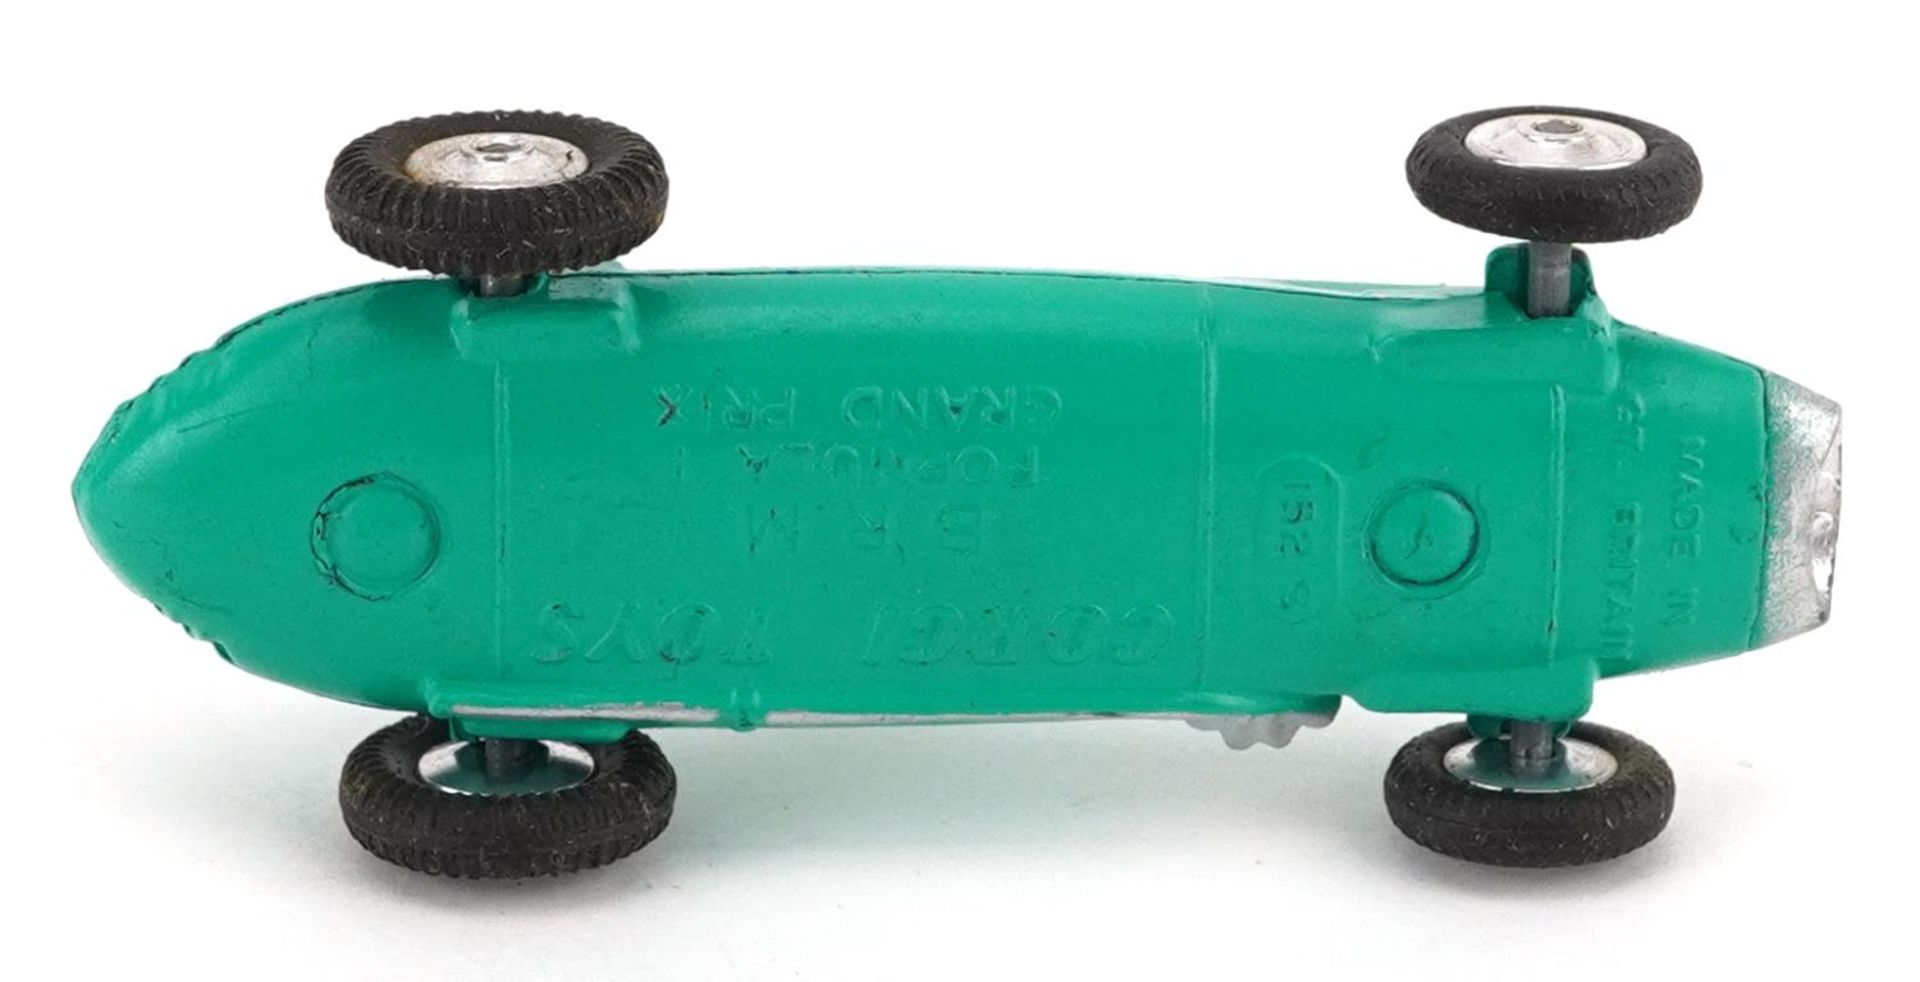 Corgi Toys BRM Formula I Grand Prix diecast racing car with box - Image 4 of 4